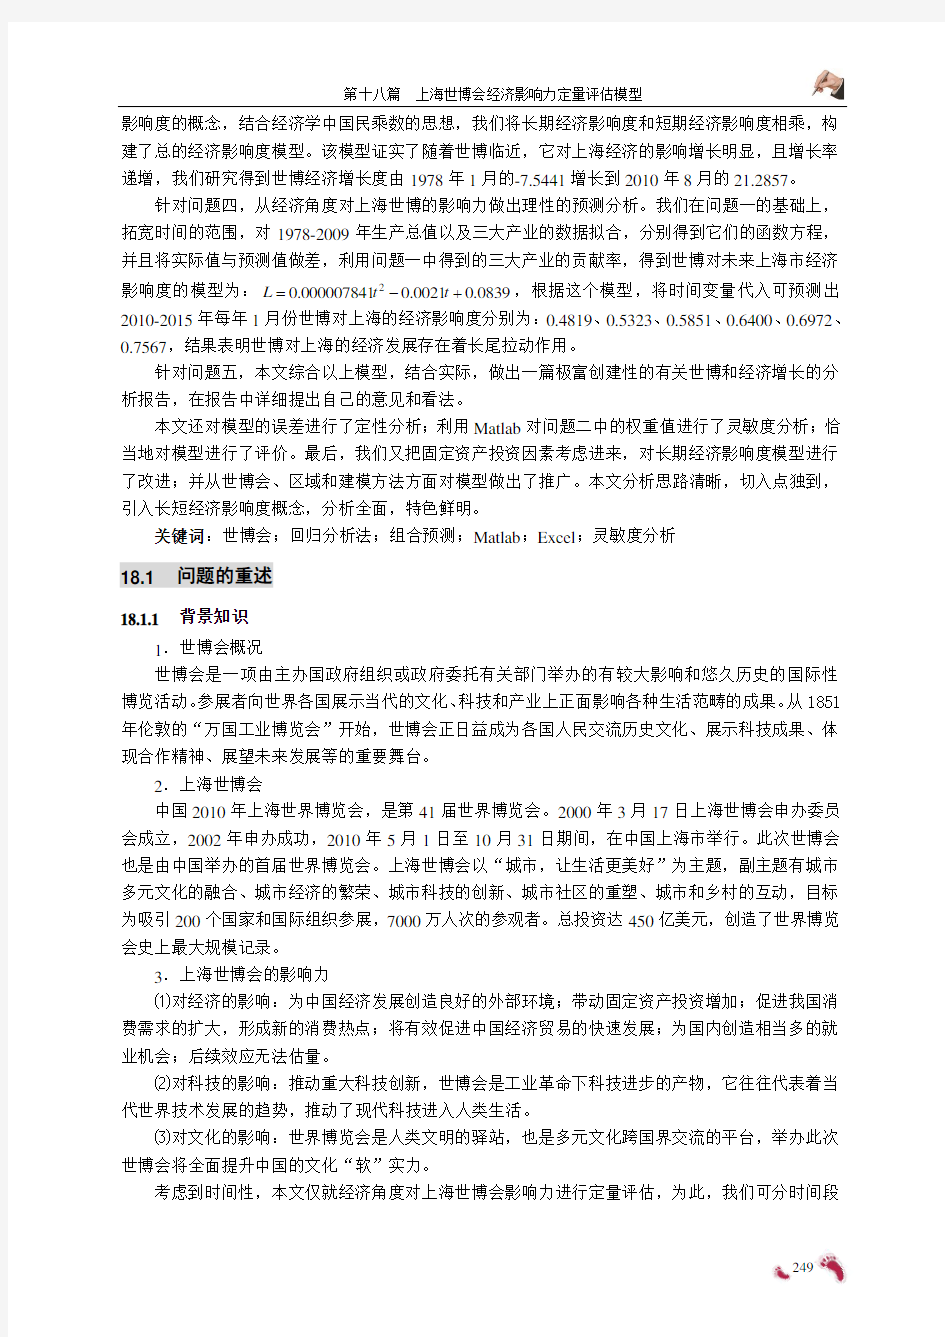 18点评2010年上海世博会影响力的定量评估